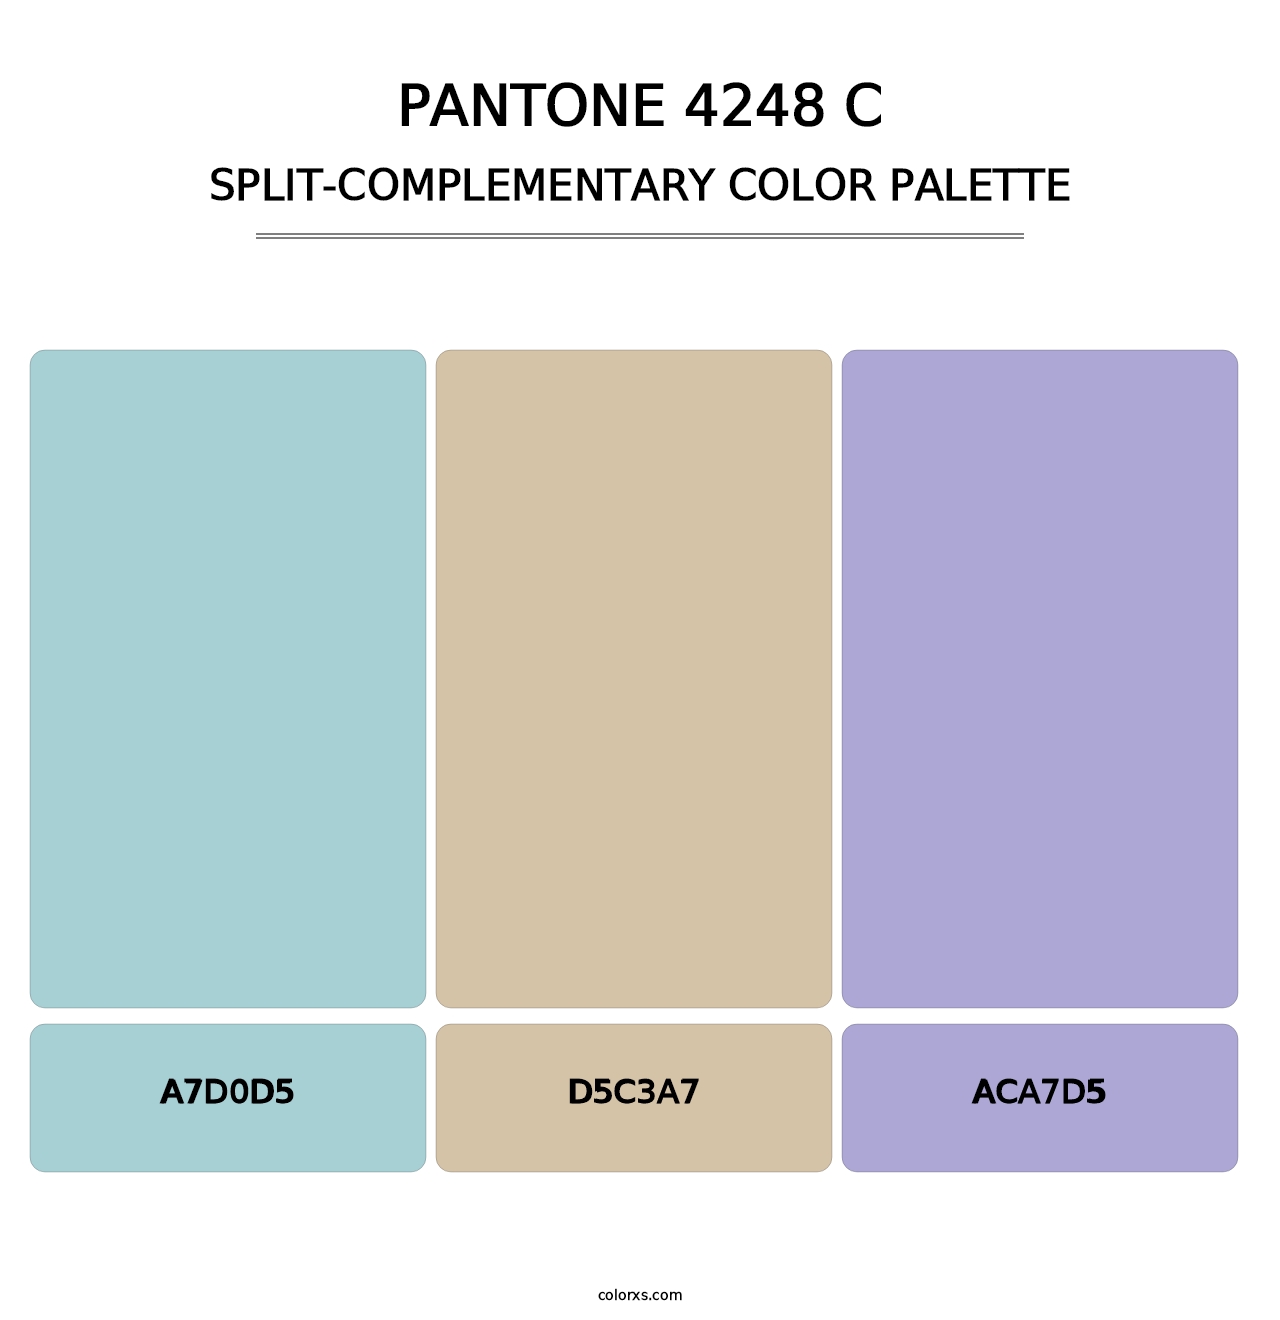 PANTONE 4248 C - Split-Complementary Color Palette